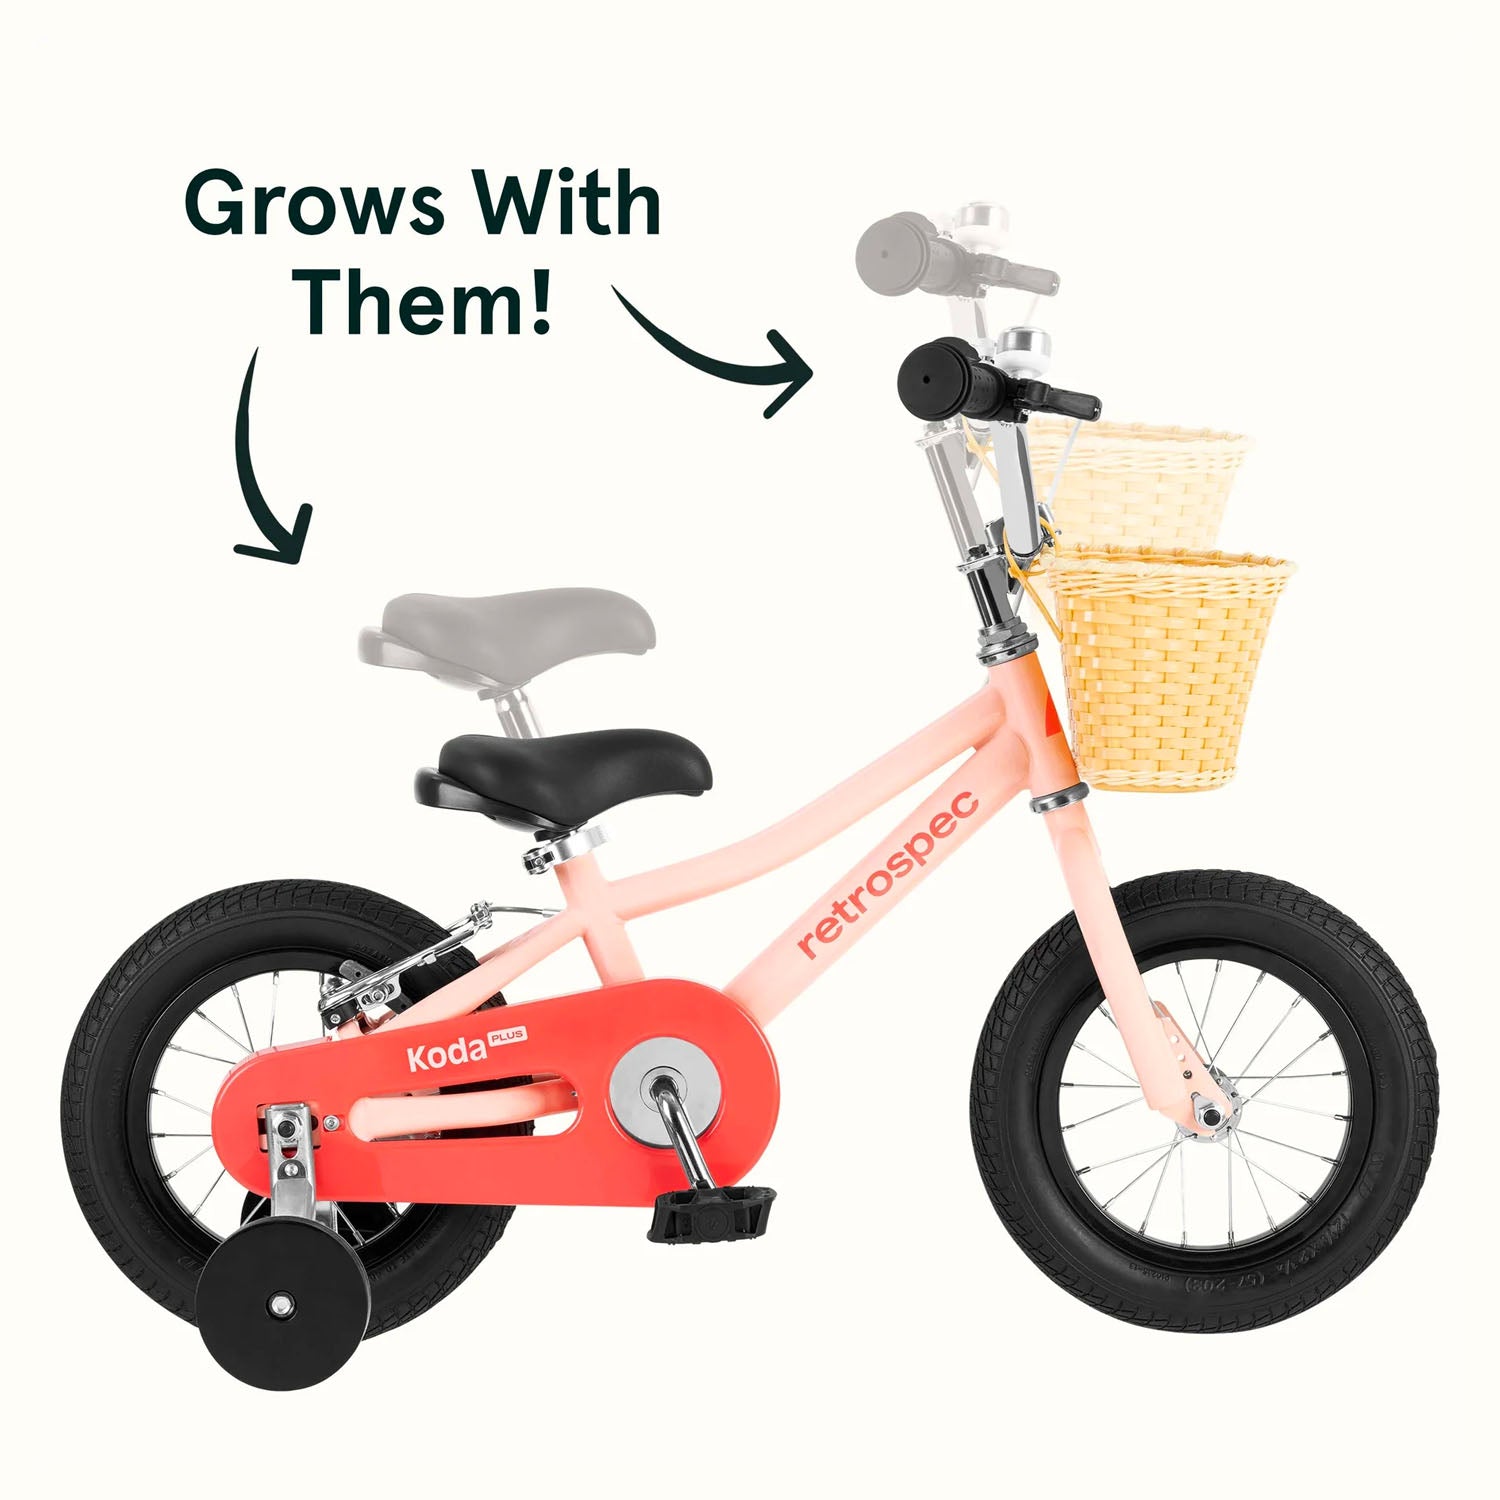 Retrospec Koda 12" Kids Bike > 12" > Blush Pink 5473 grows with child, Bixby Bicycles, bixbybicycles.com